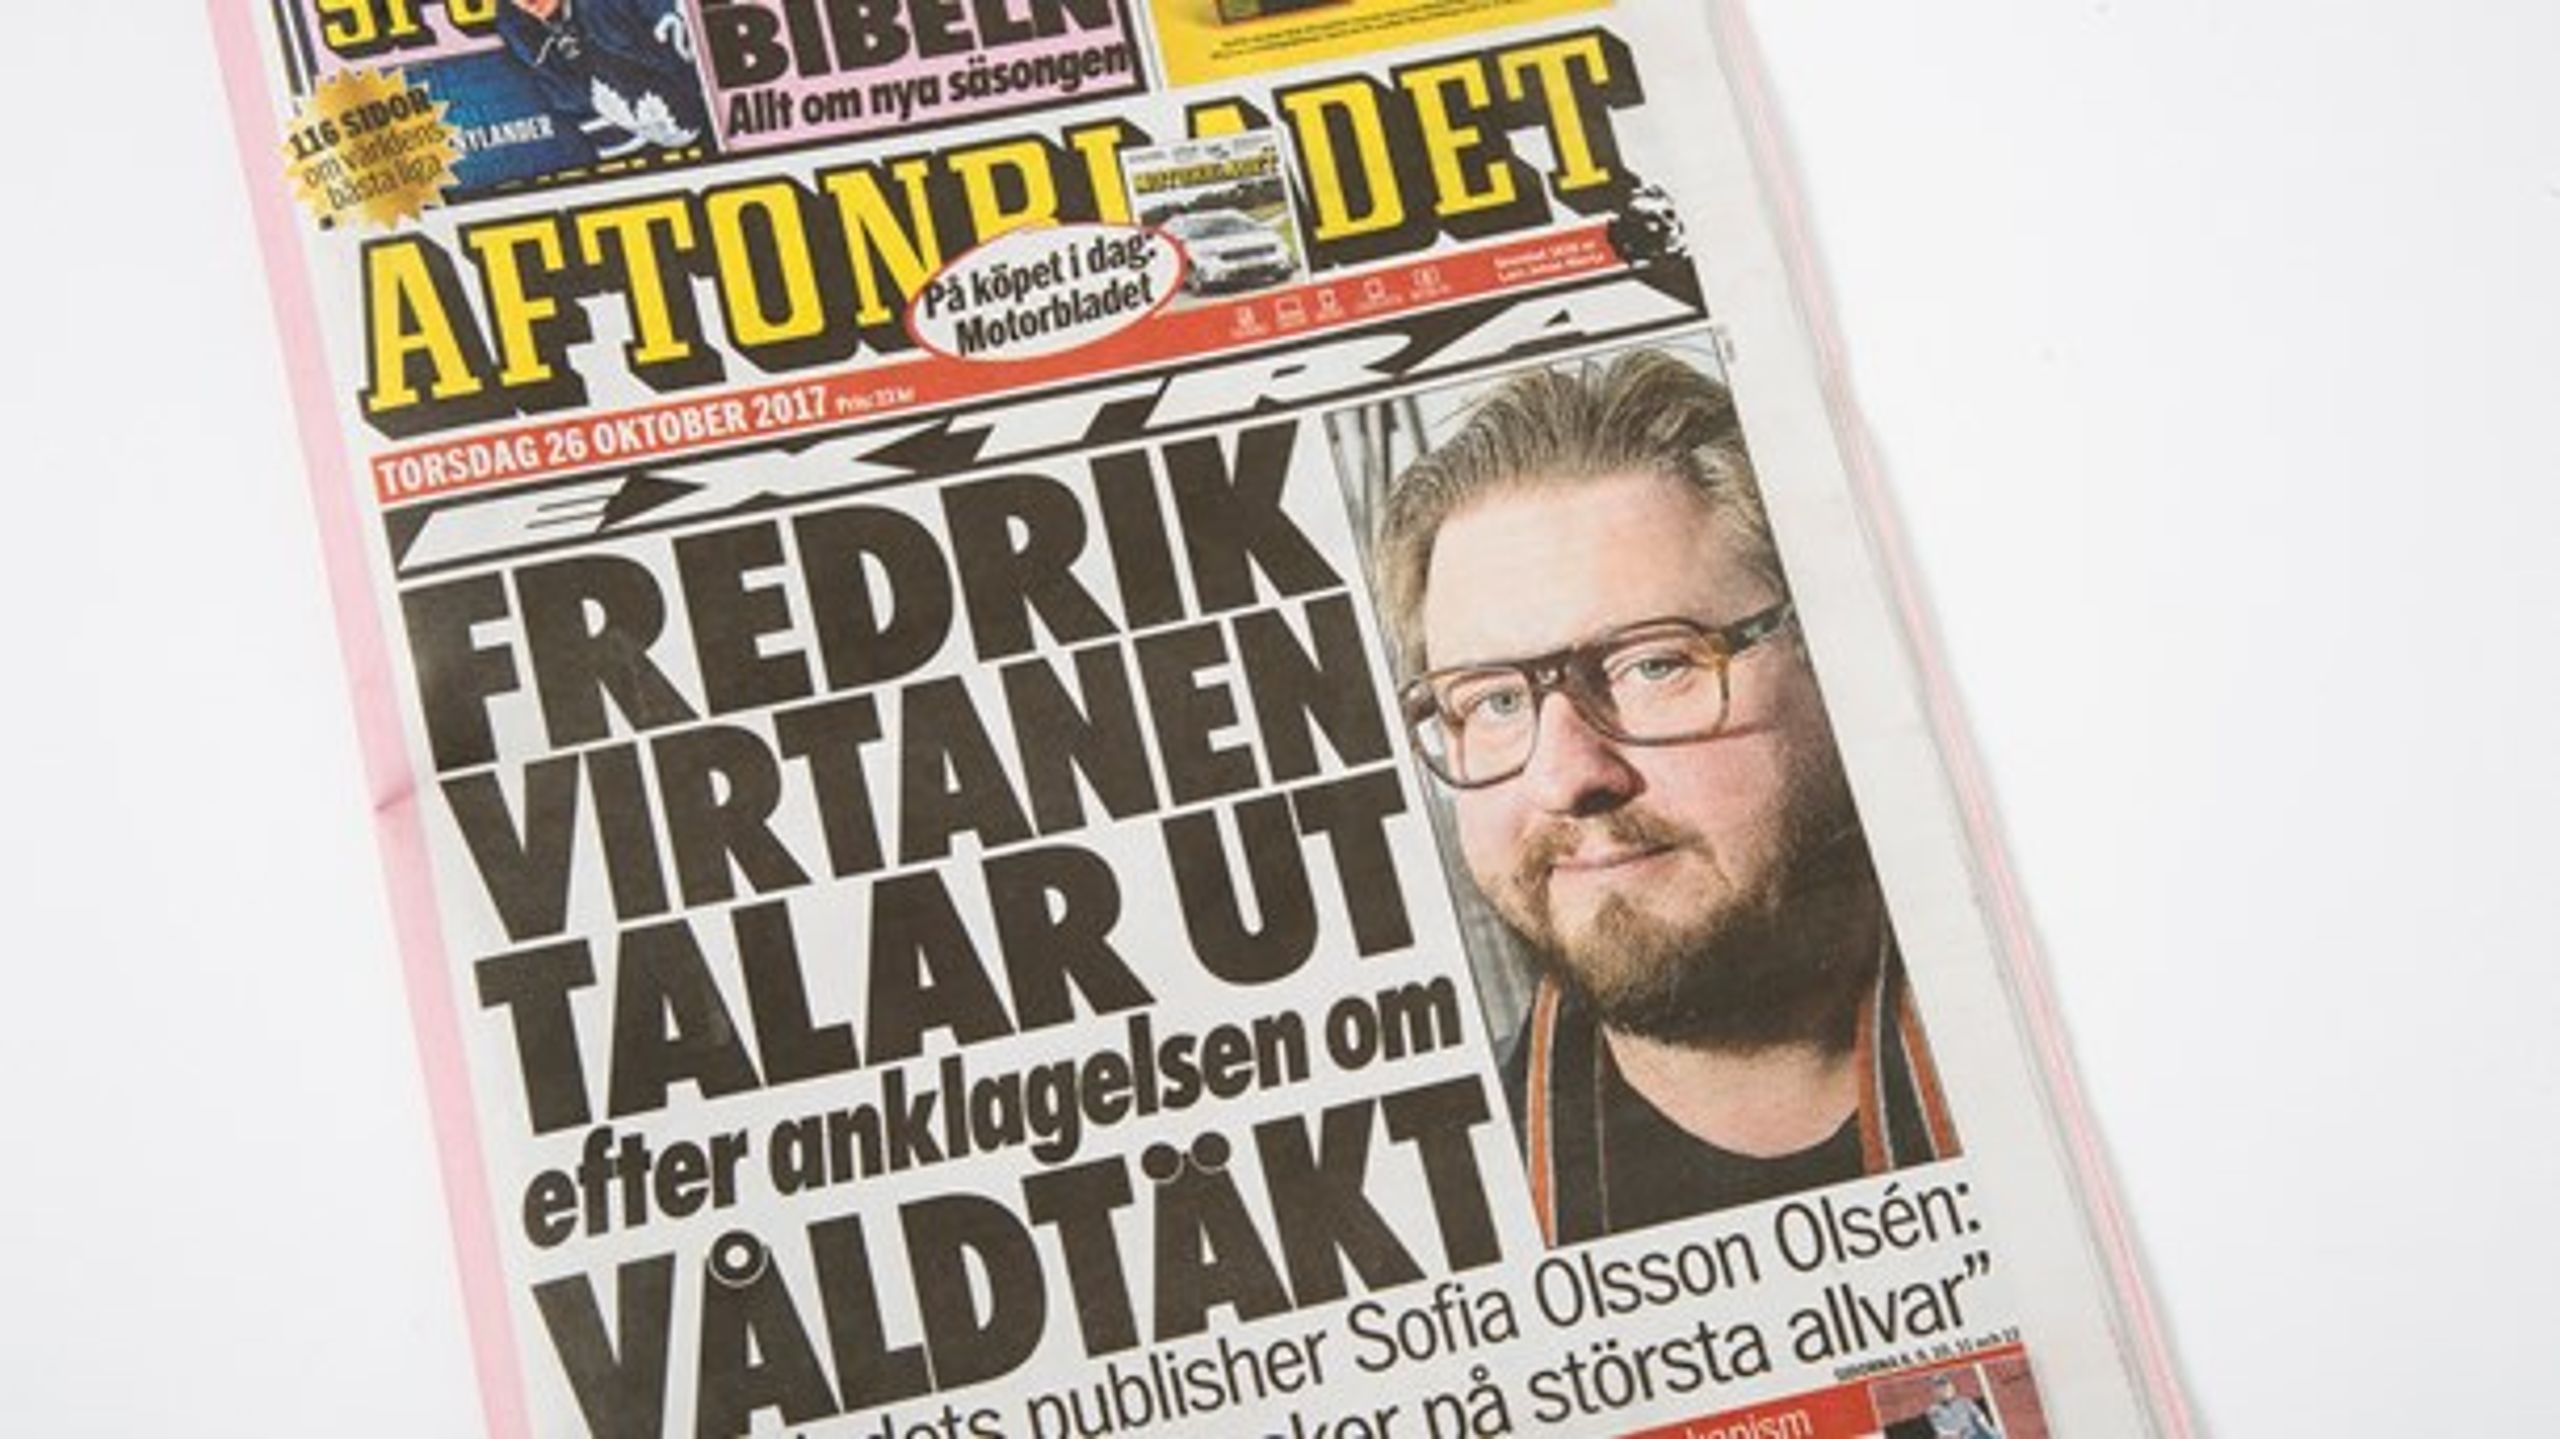 I perioden, hvor #metoo-historierne kører, får den venstreorienterede kulturchef på Aftonbladet Åsa Linderborg sværere og sværere ved at se sig selv i spejlet.